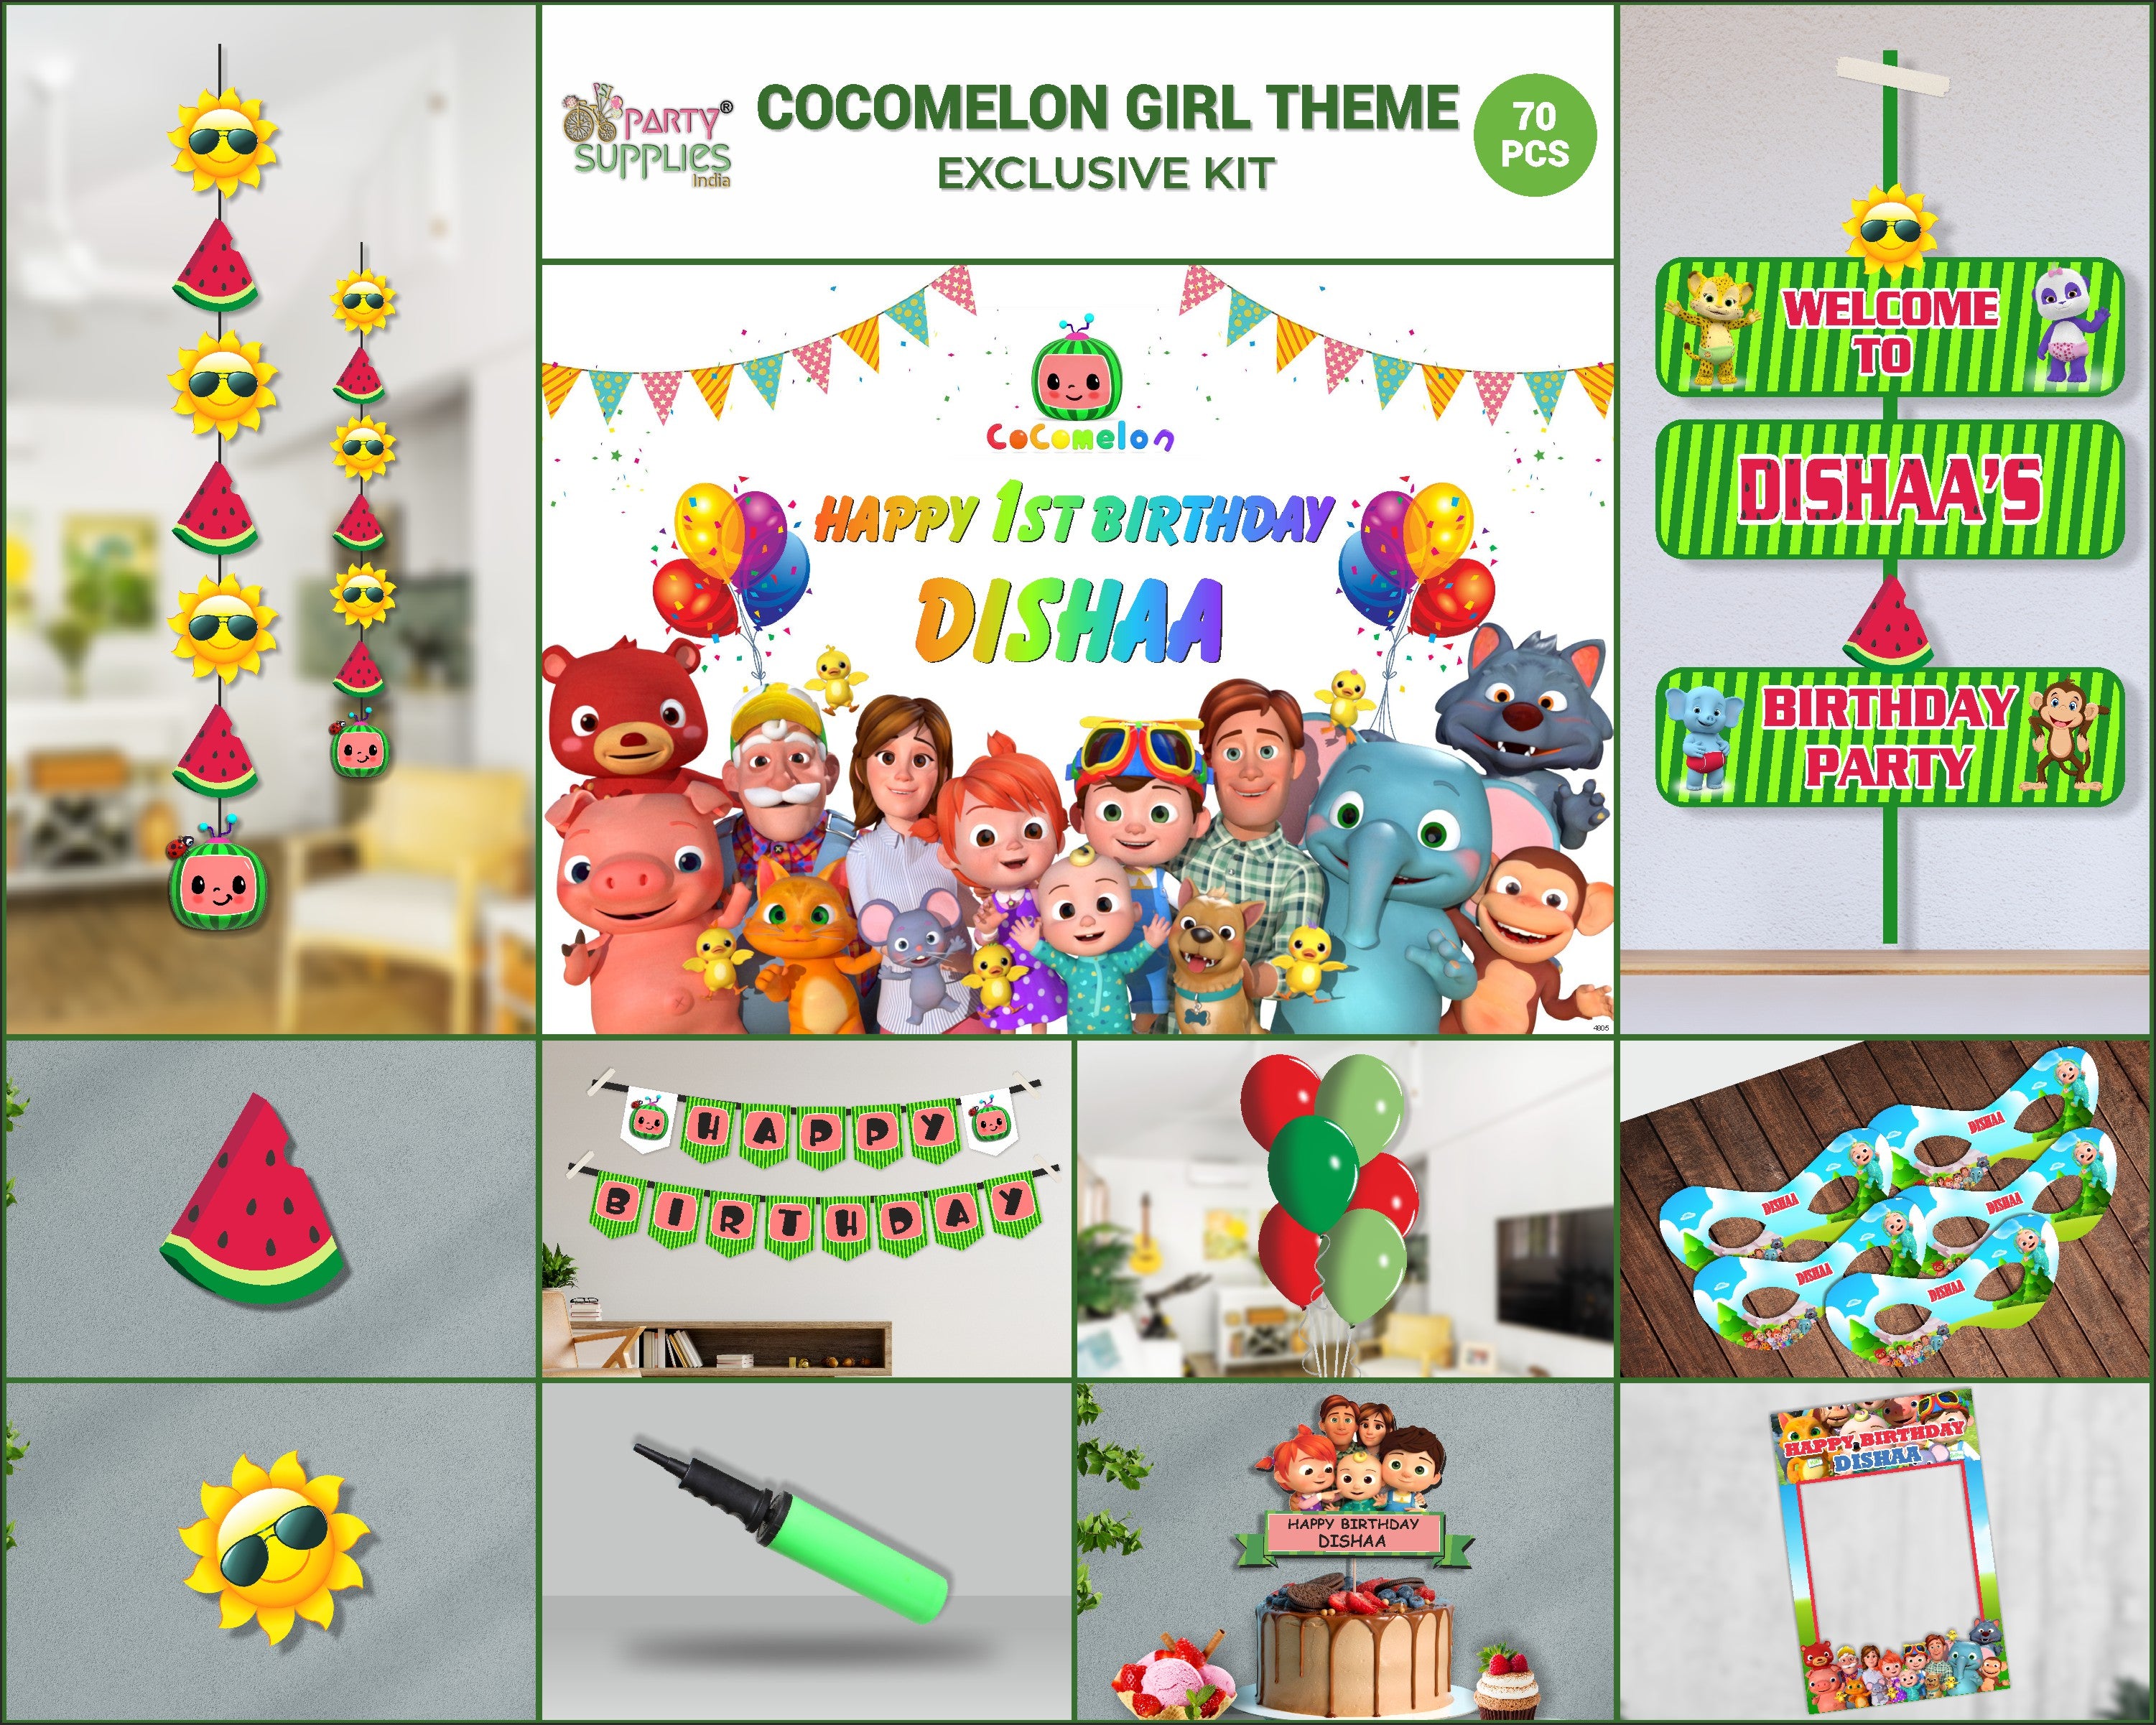 PSI Coco Melon Girl Theme Exclusive Kit